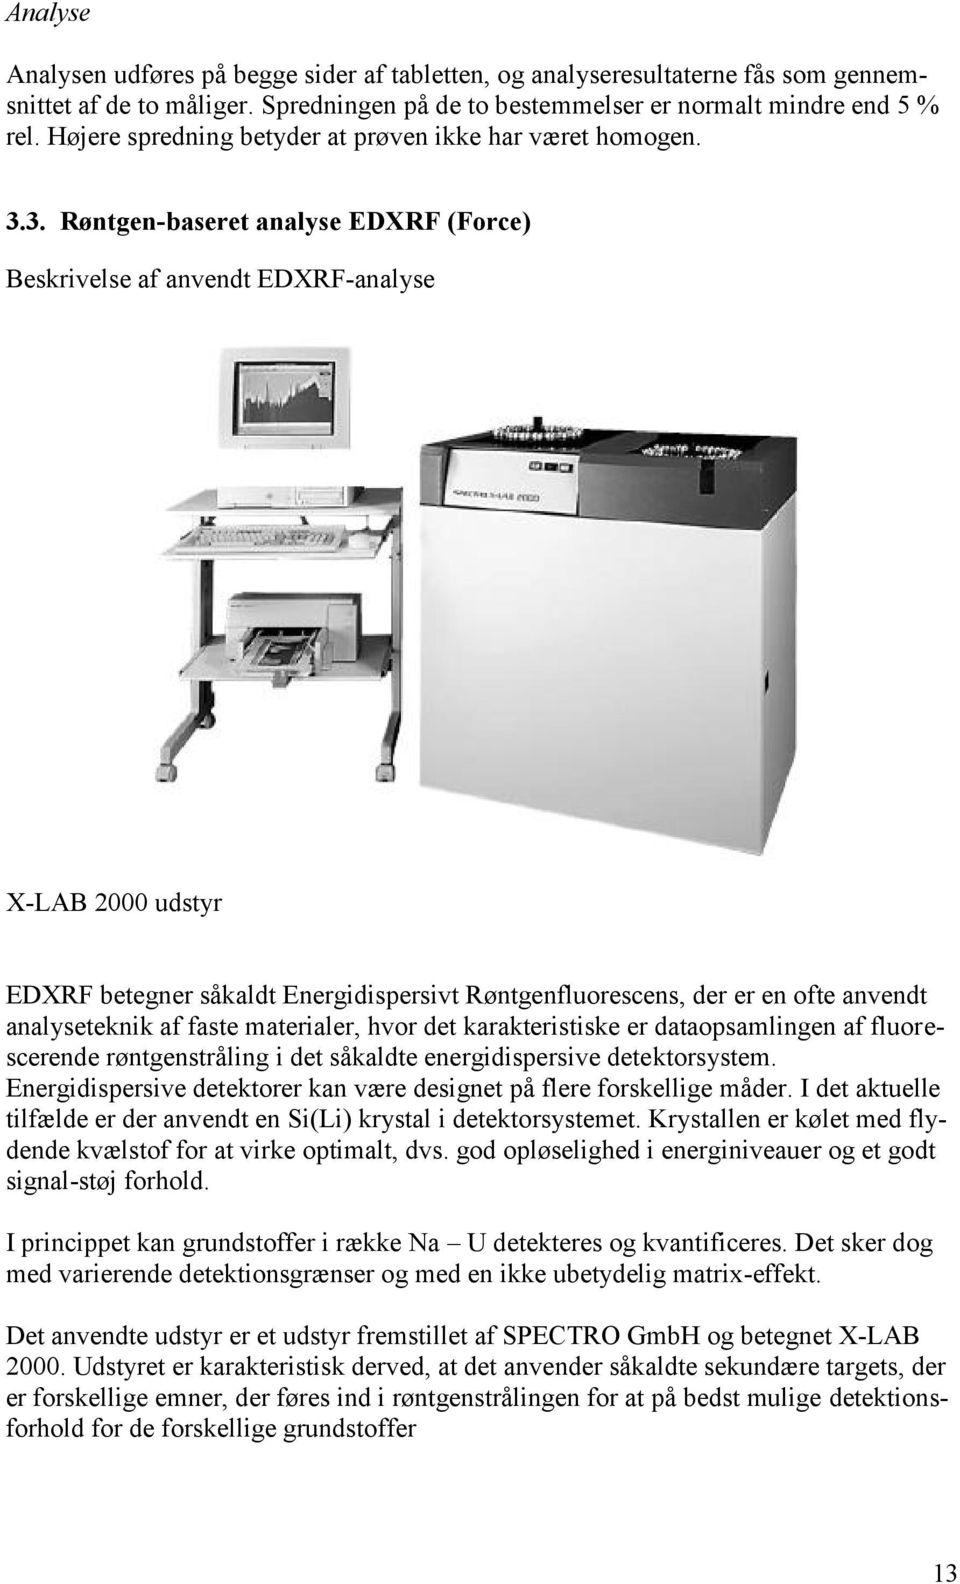 3. Røntgen-baseret analyse EDXRF (Force) Beskrivelse af anvendt EDXRF-analyse X-LAB 2000 udstyr EDXRF betegner såkaldt Energidispersivt Røntgenfluorescens, der er en ofte anvendt analyseteknik af